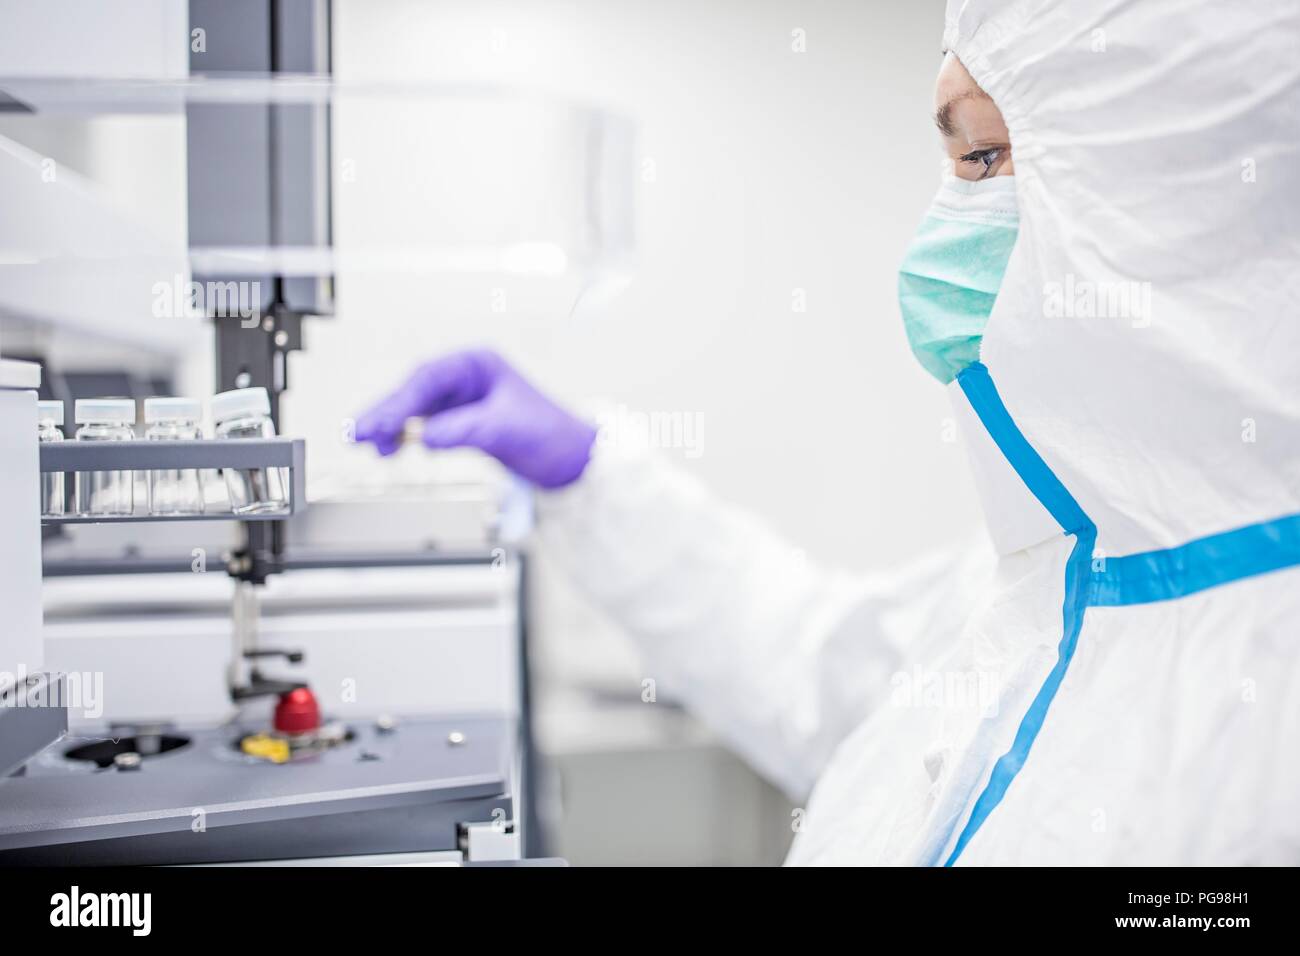 Cultures de cellules souches contrôle technicien dans un laboratoire qui fabrique des tissus humains pour les implants. Ces implants comprennent l'os et des greffes de peau. Banque D'Images